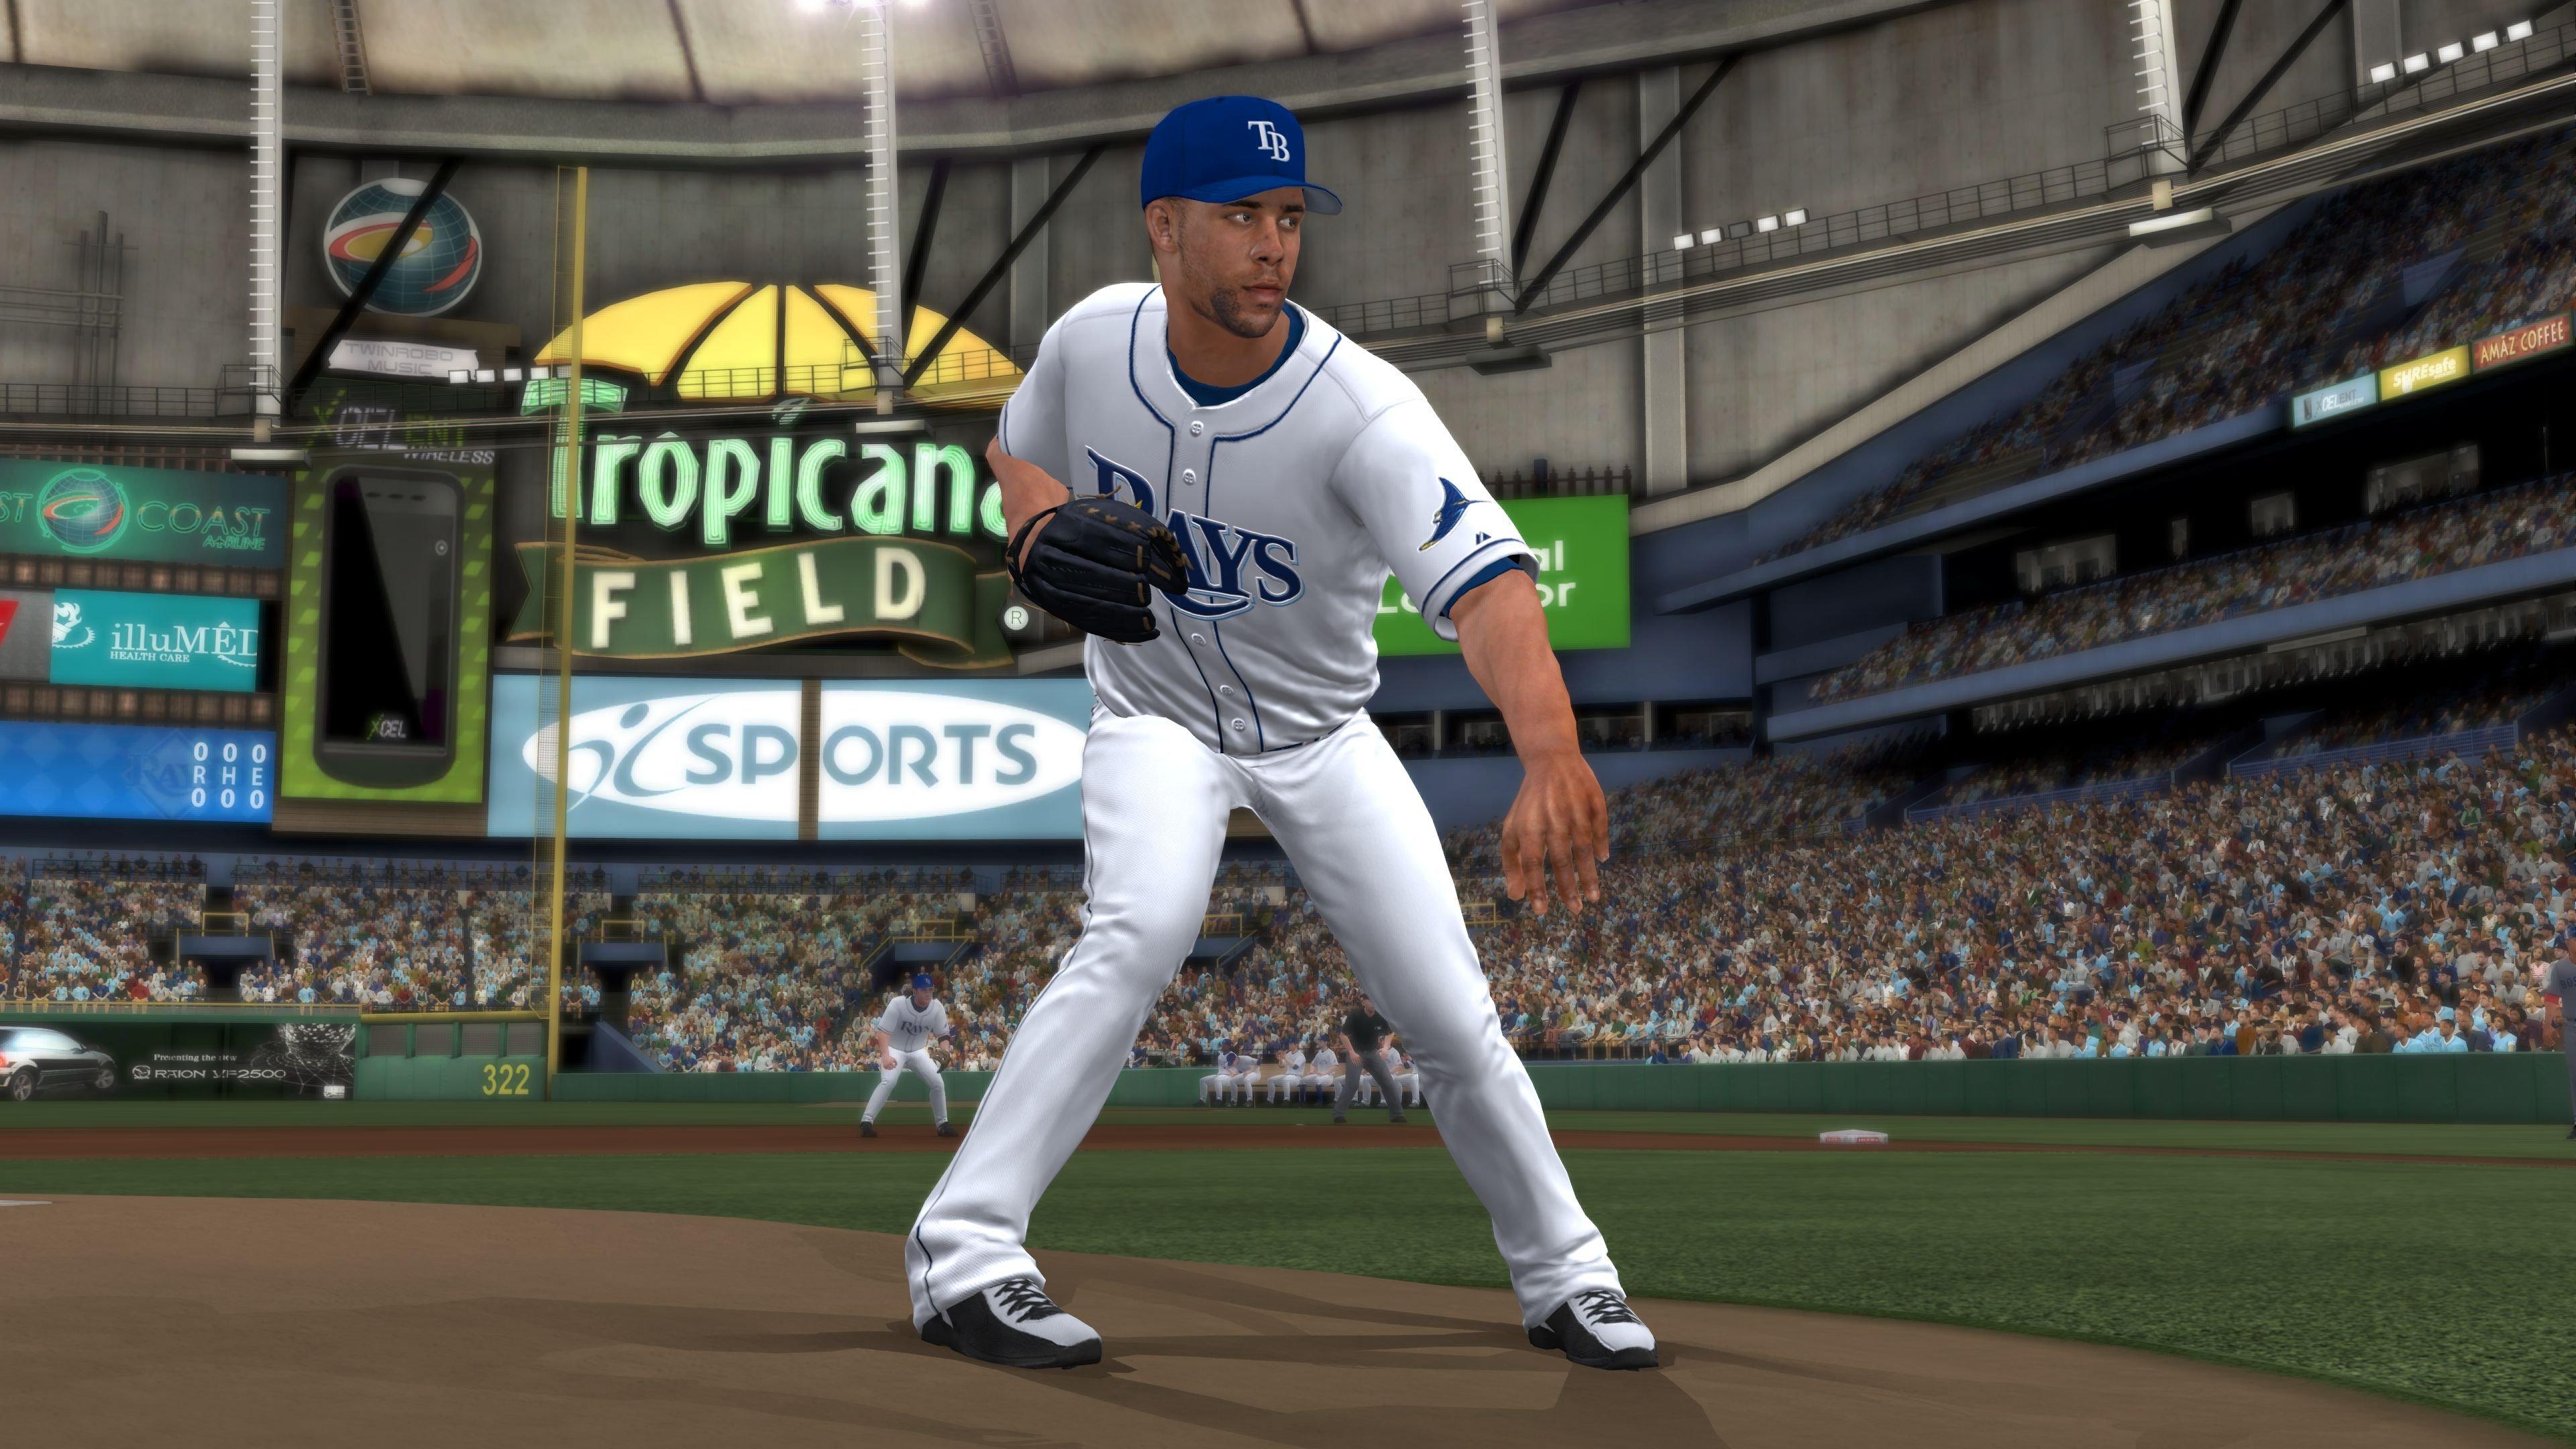 Major League Baseball 2K12 - Xbox 360